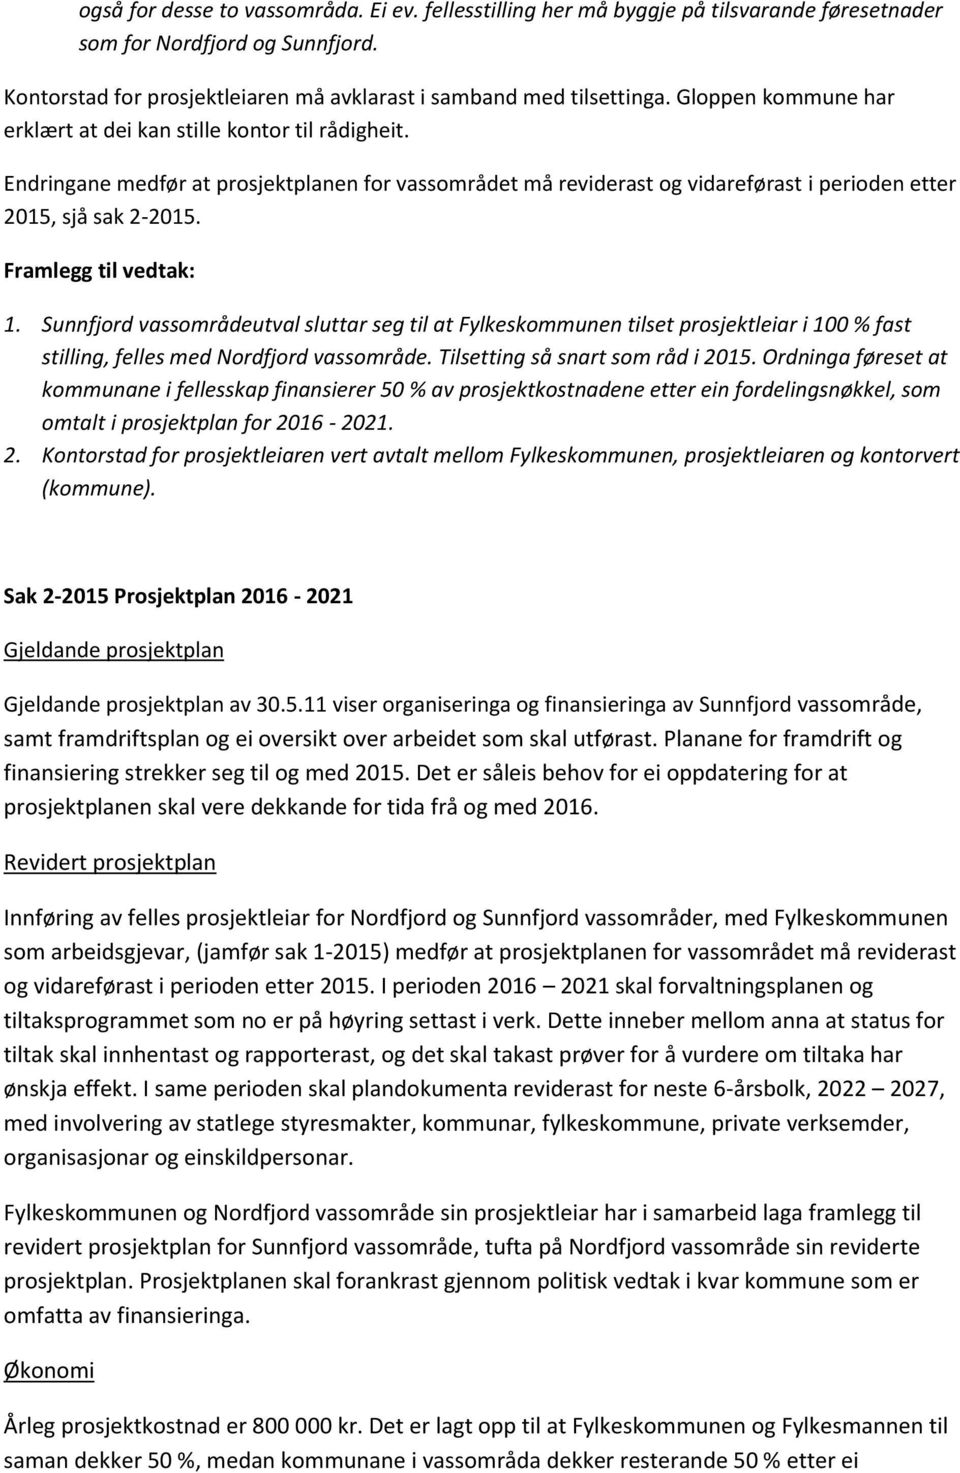 Framlegg til vedtak: 1. Sunnfjord vassområdeutval sluttar seg til at Fylkeskommunen tilset prosjektleiar i 100 % fast stilling, felles med Nordfjord vassområde. Tilsetting så snart som råd i 2015.